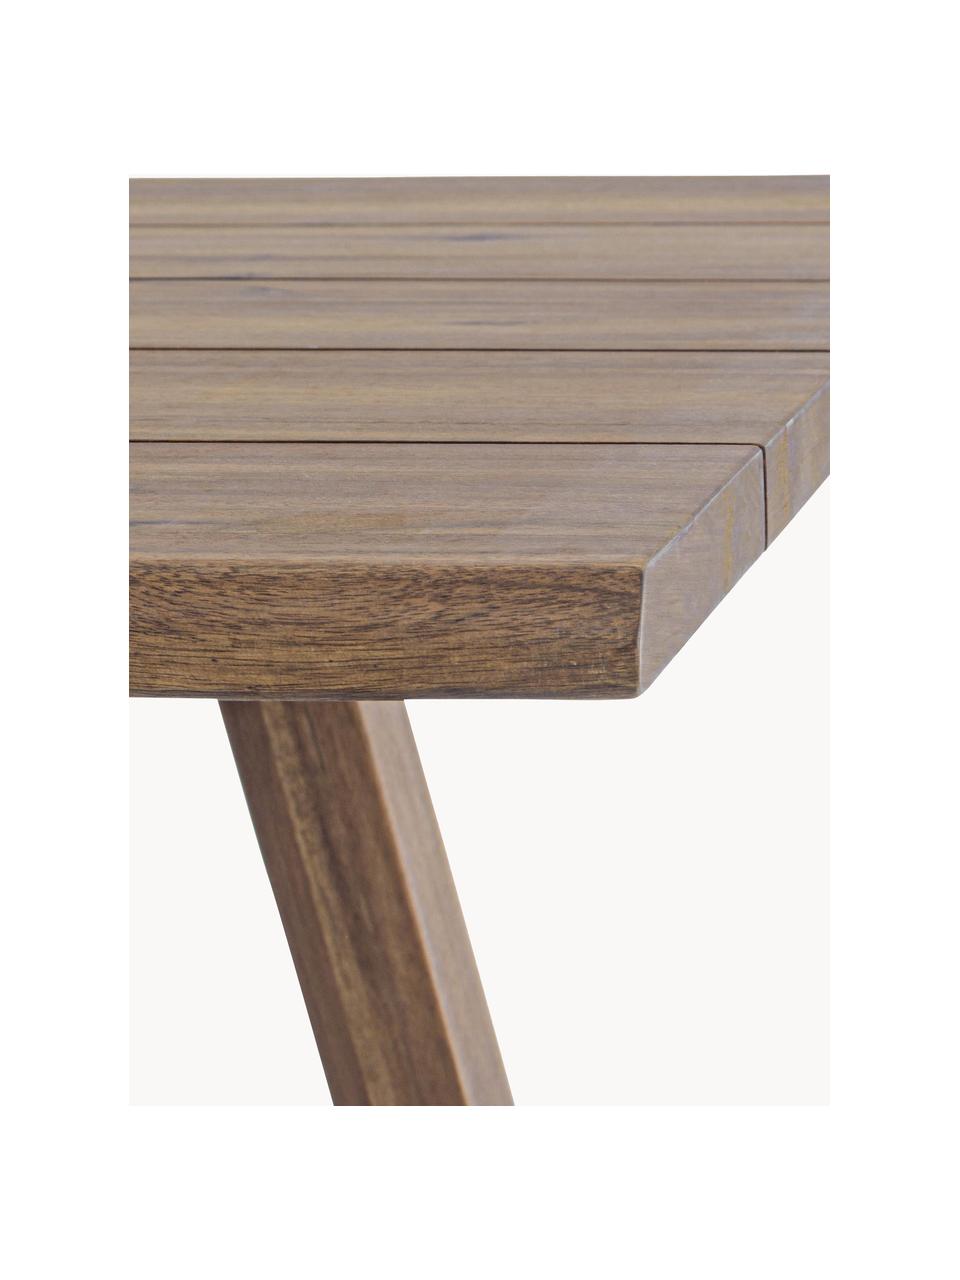 Gartentisch Glasgow aus Akazienholz, 180 x 90 cm, Akazienholz

Dieses Produkt wird aus nachhaltig gewonnenem, FSC®-zertifiziertem Holz gefertigt., Akazienholz, B 180 x T 90 cm